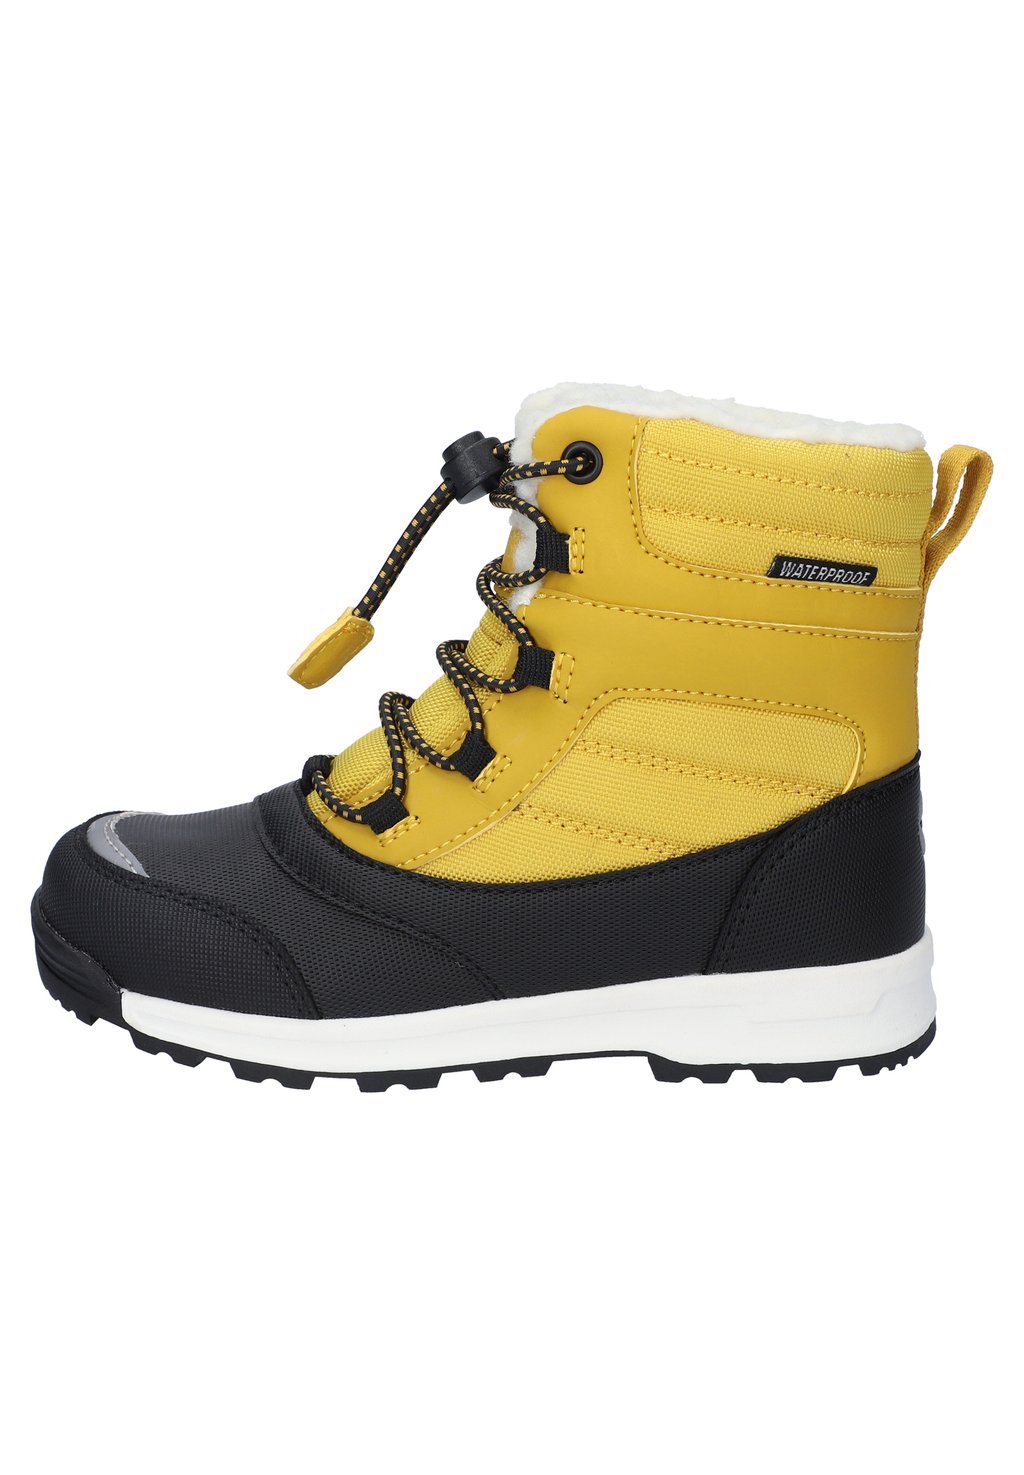 Зимние ботинки Unisex HI-TEC, цвет golden nugget/black hi black